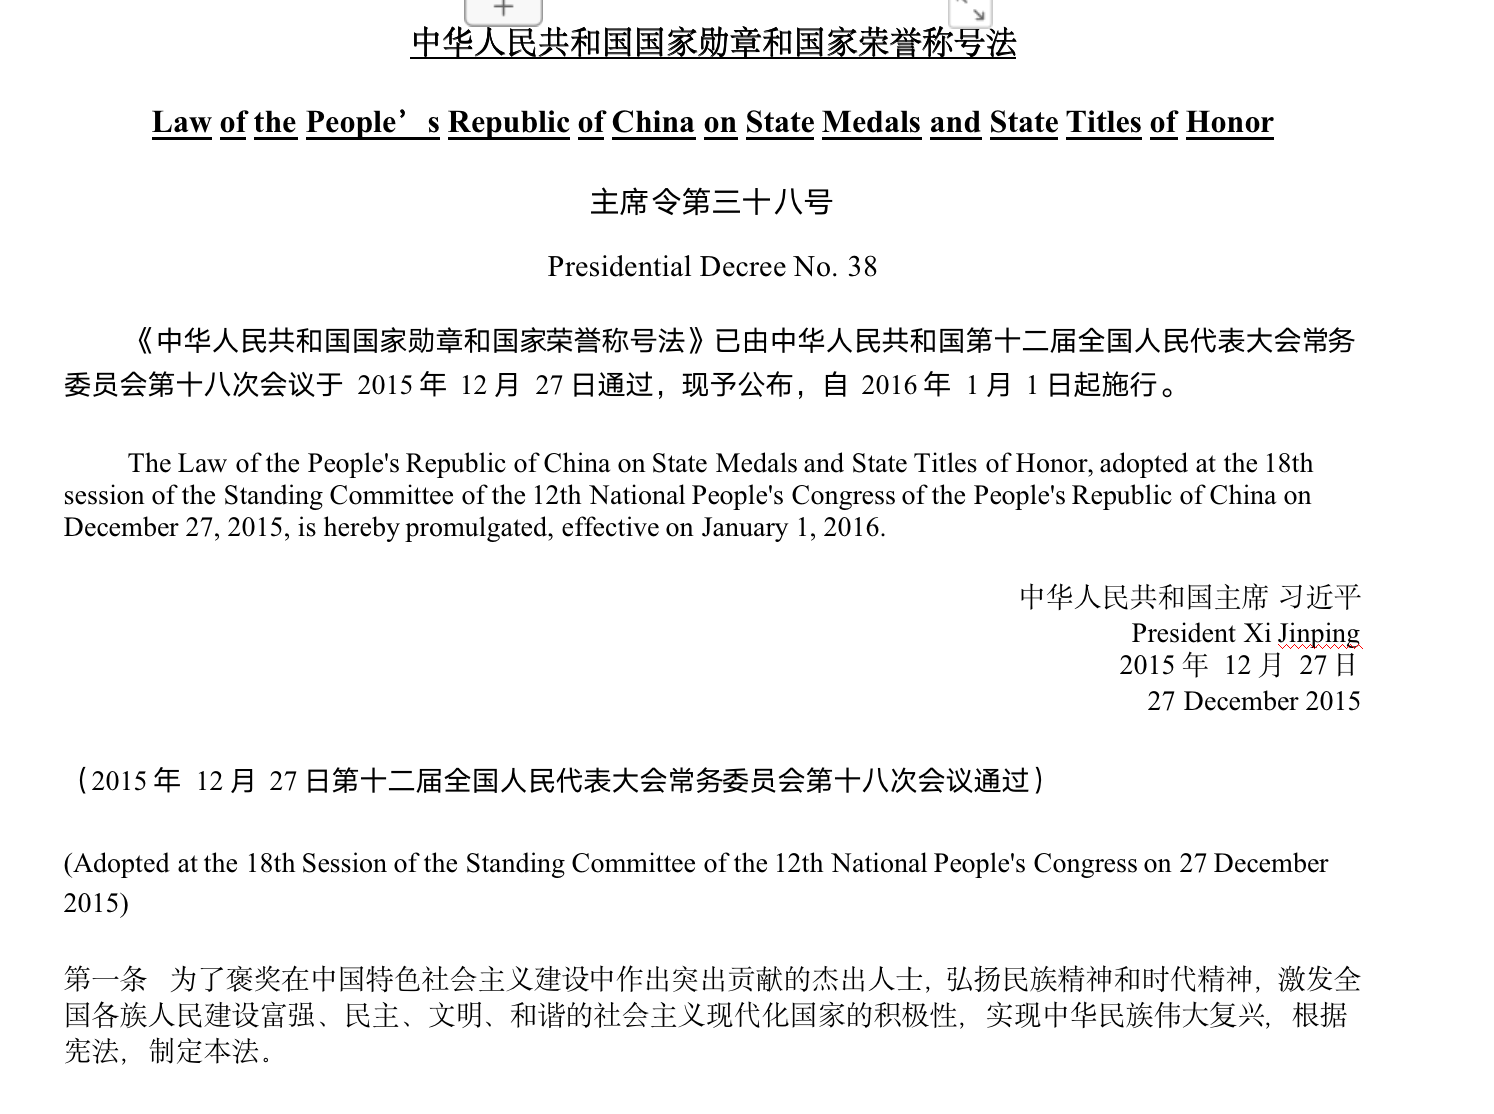 中华人民共和国国家勋章和国家荣誉称号法(中英文对照版)